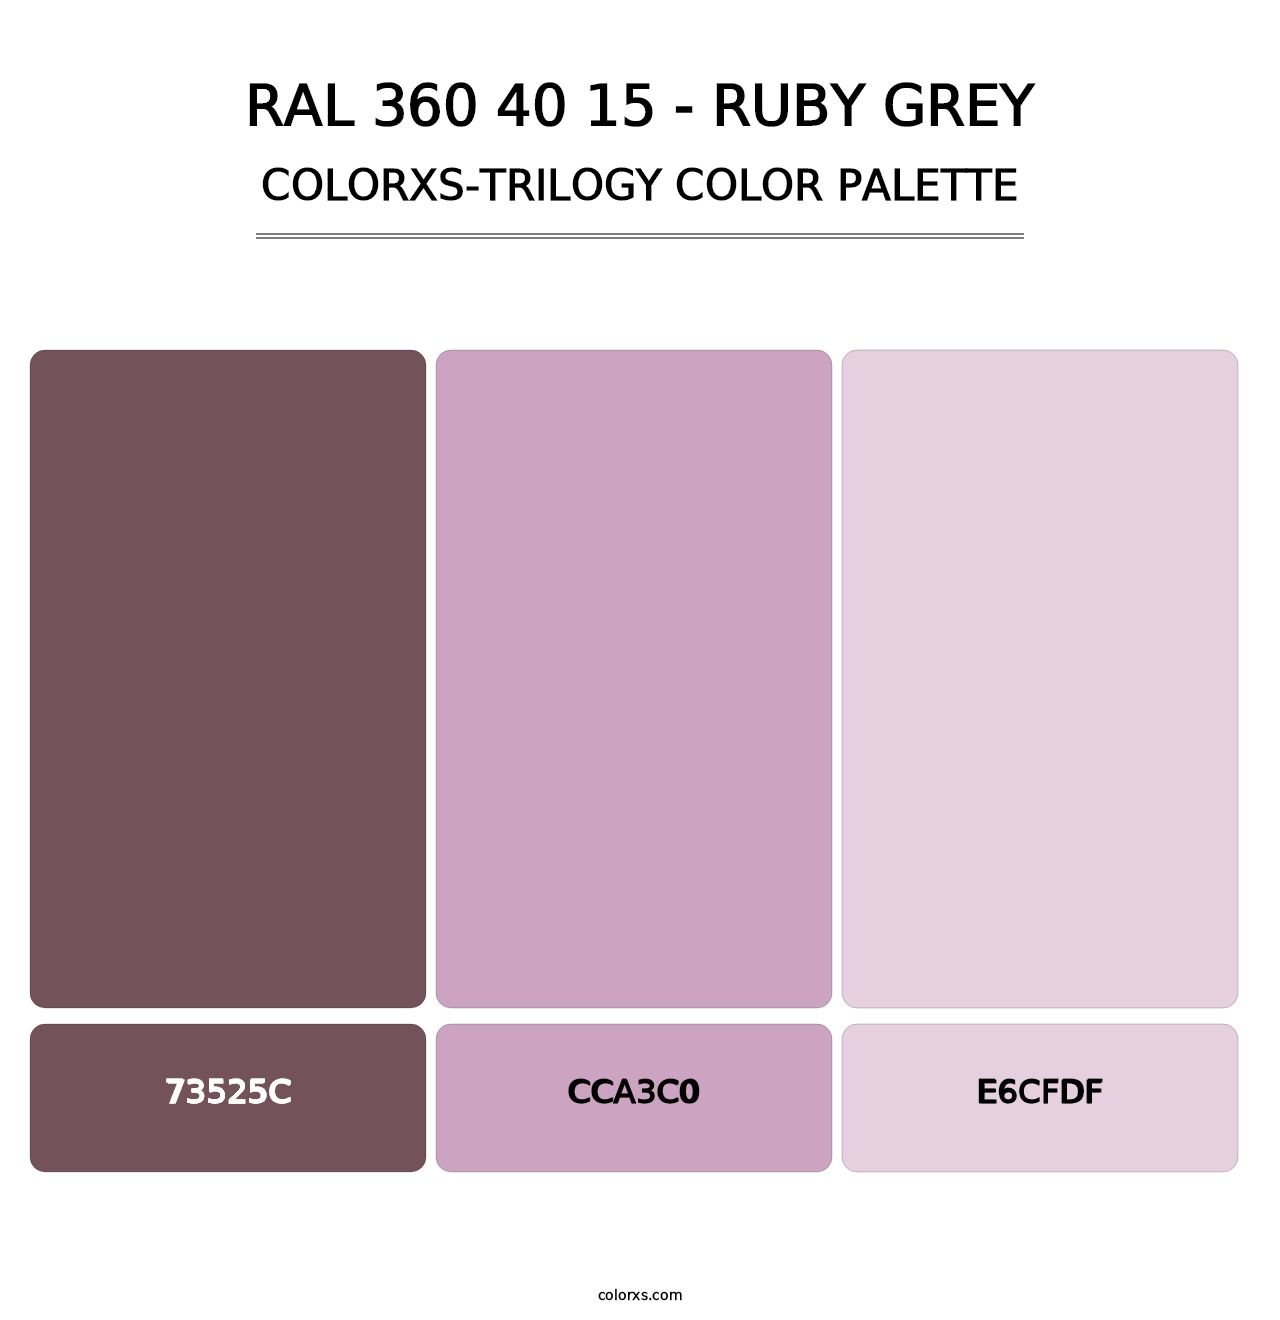 RAL 360 40 15 - Ruby Grey - Colorxs Trilogy Palette